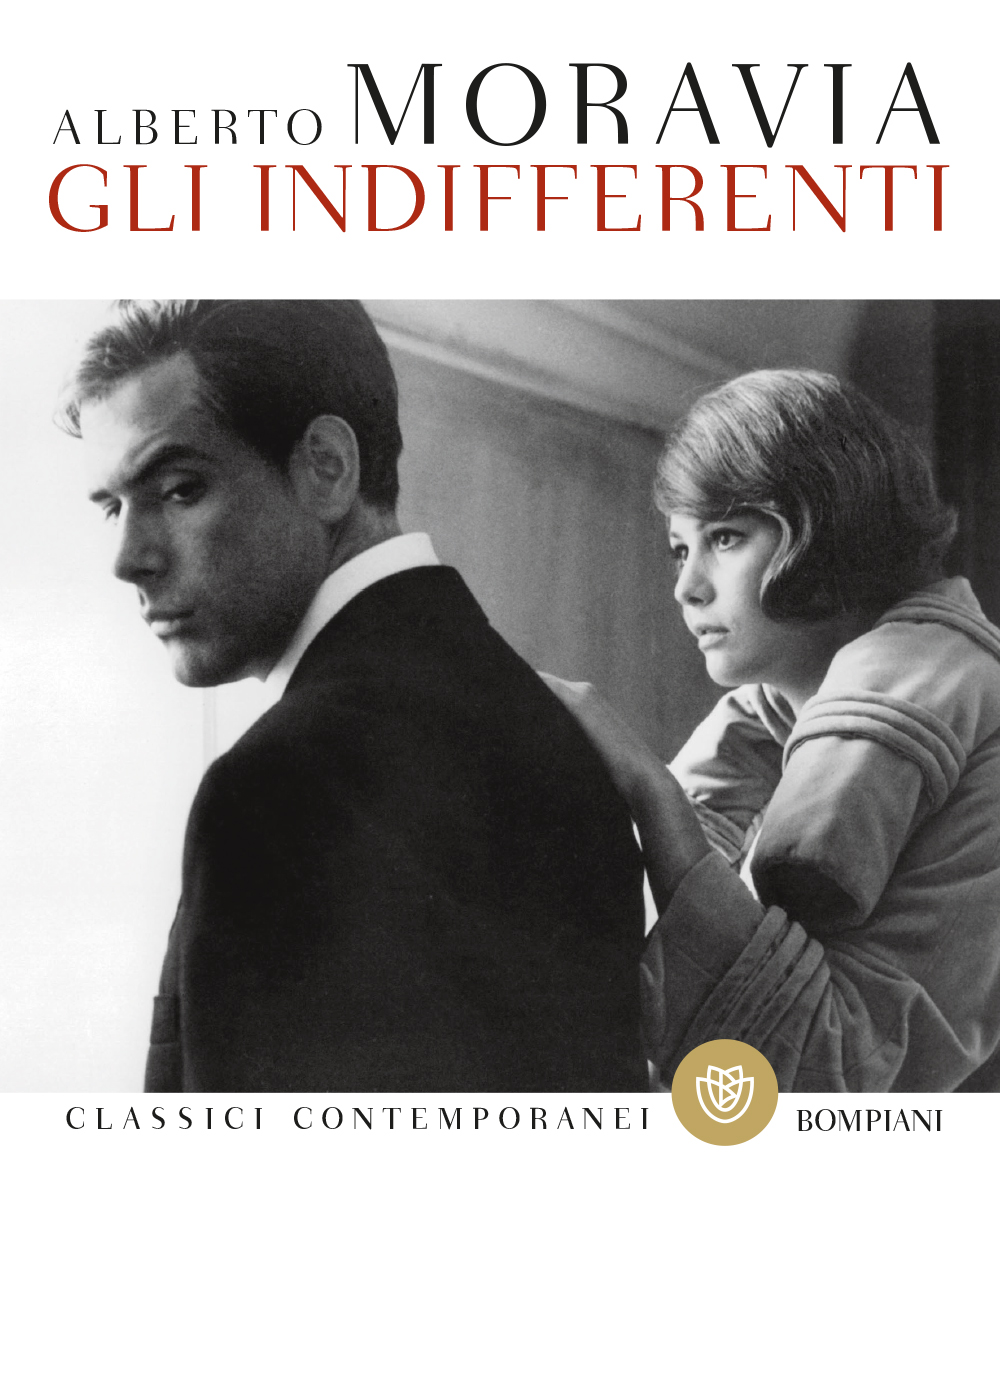 Alberto Moravia: Gli indifferenti (Italian language, 2005, Bompiani)